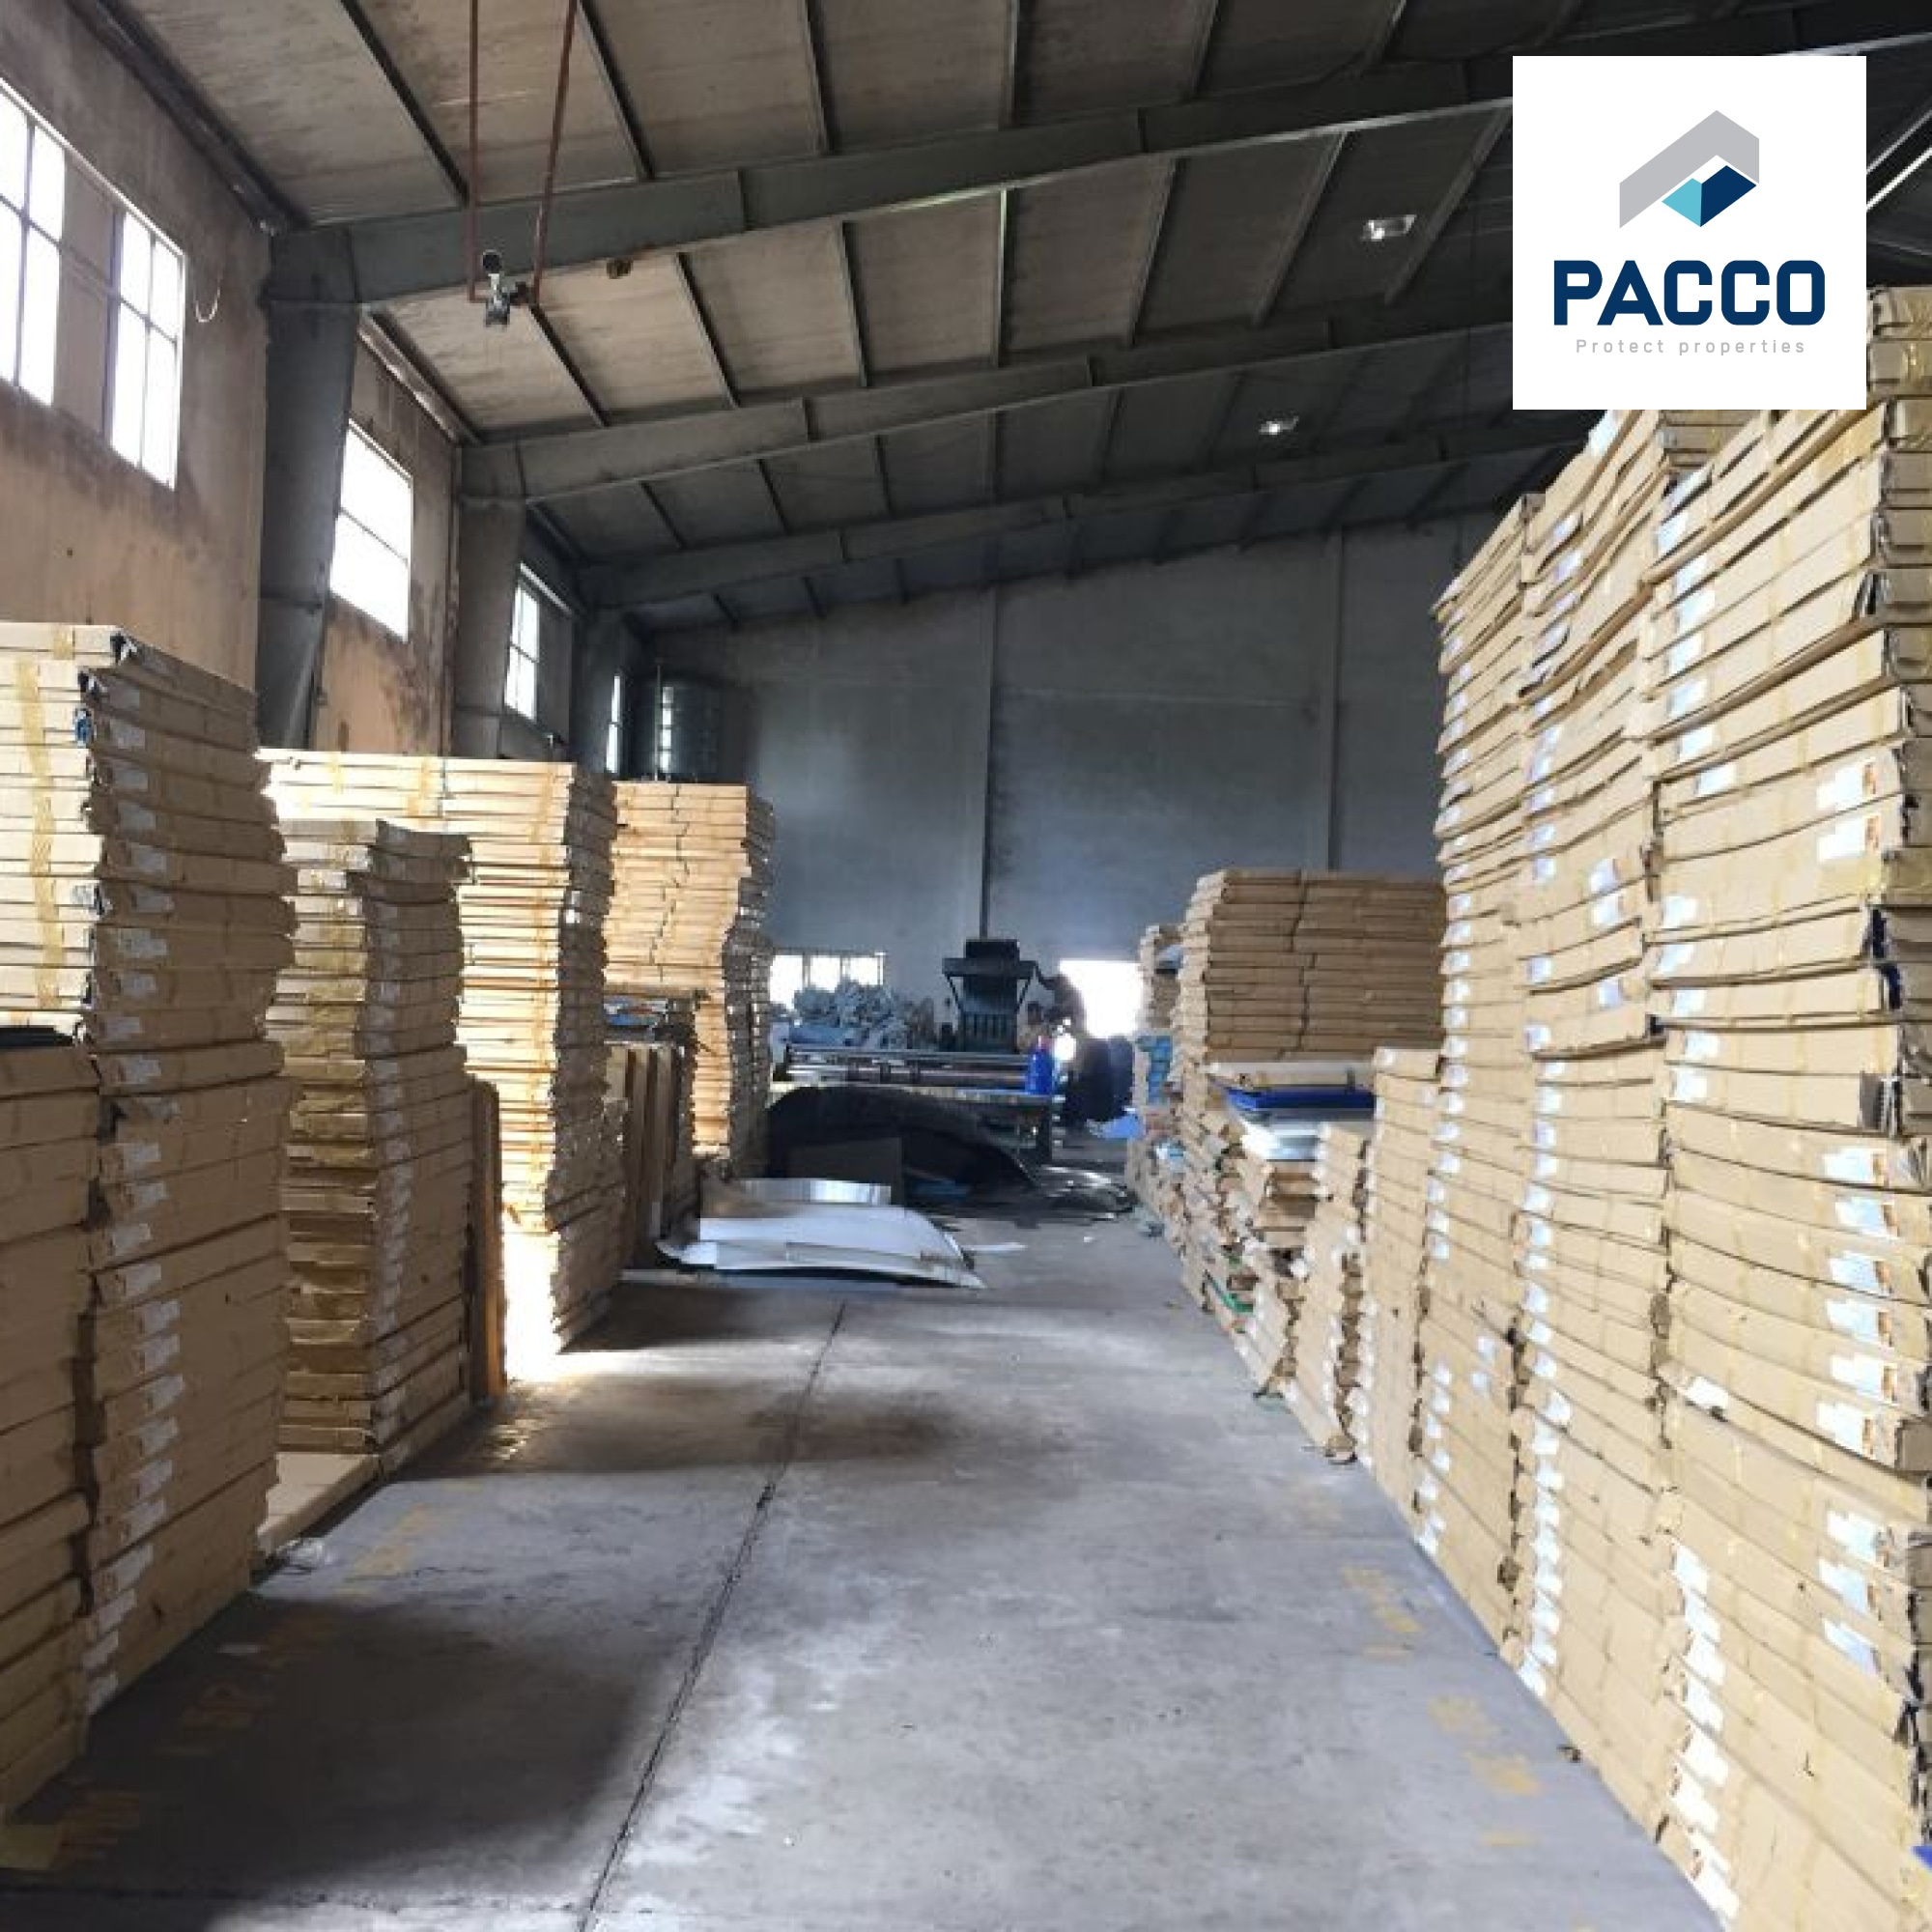 xưởng sản xuất tấm nhựa danpla tphcm của Pacco